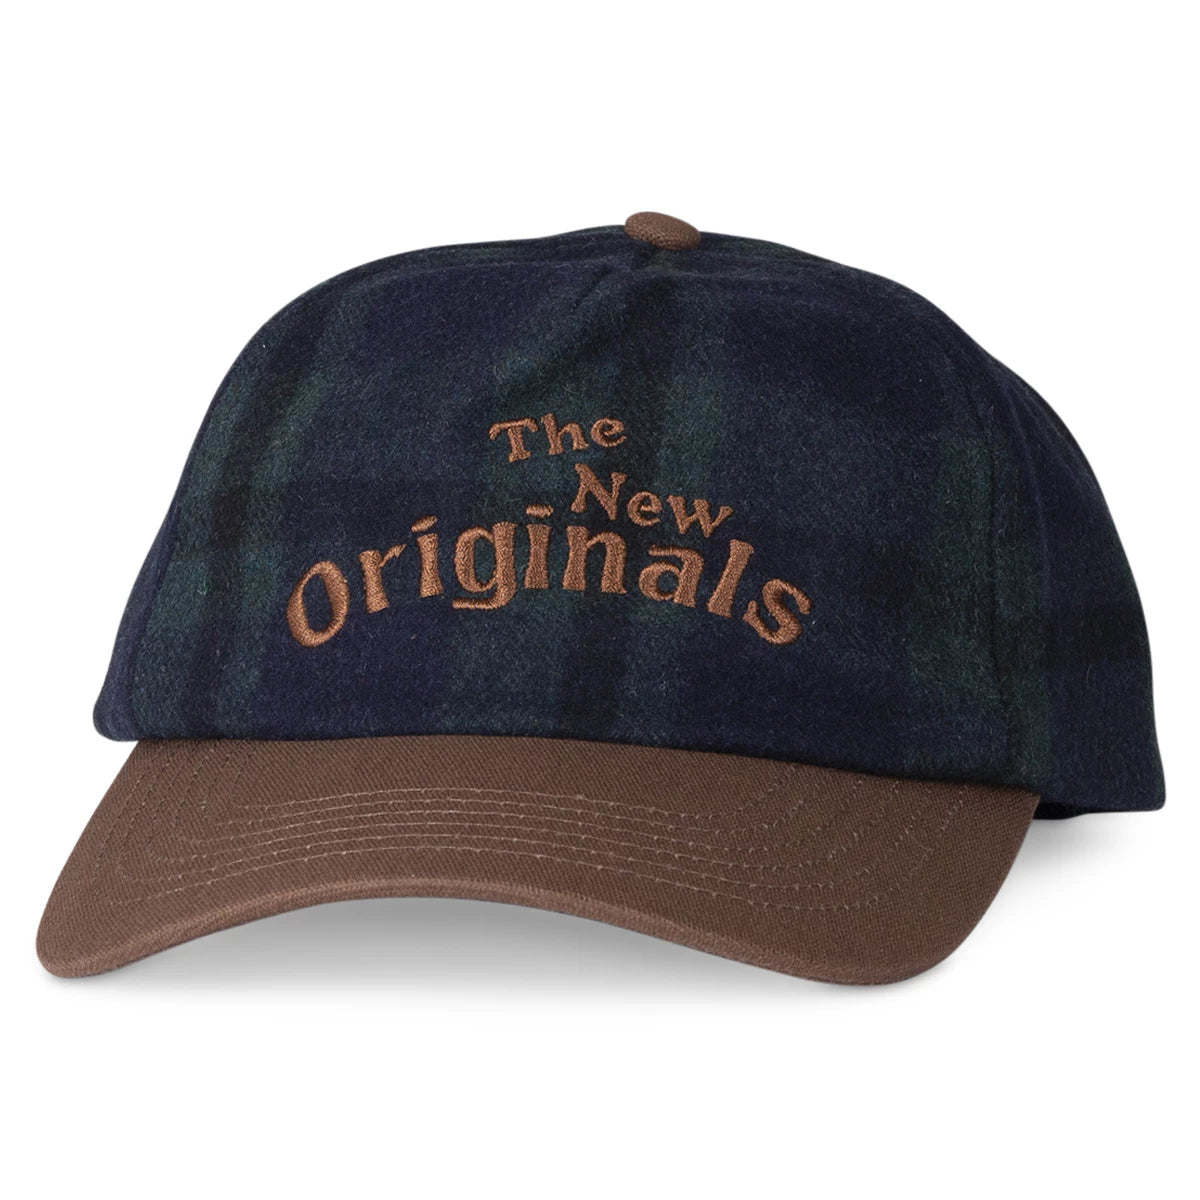 The New Originals Pet groen met bruin | Workman cap